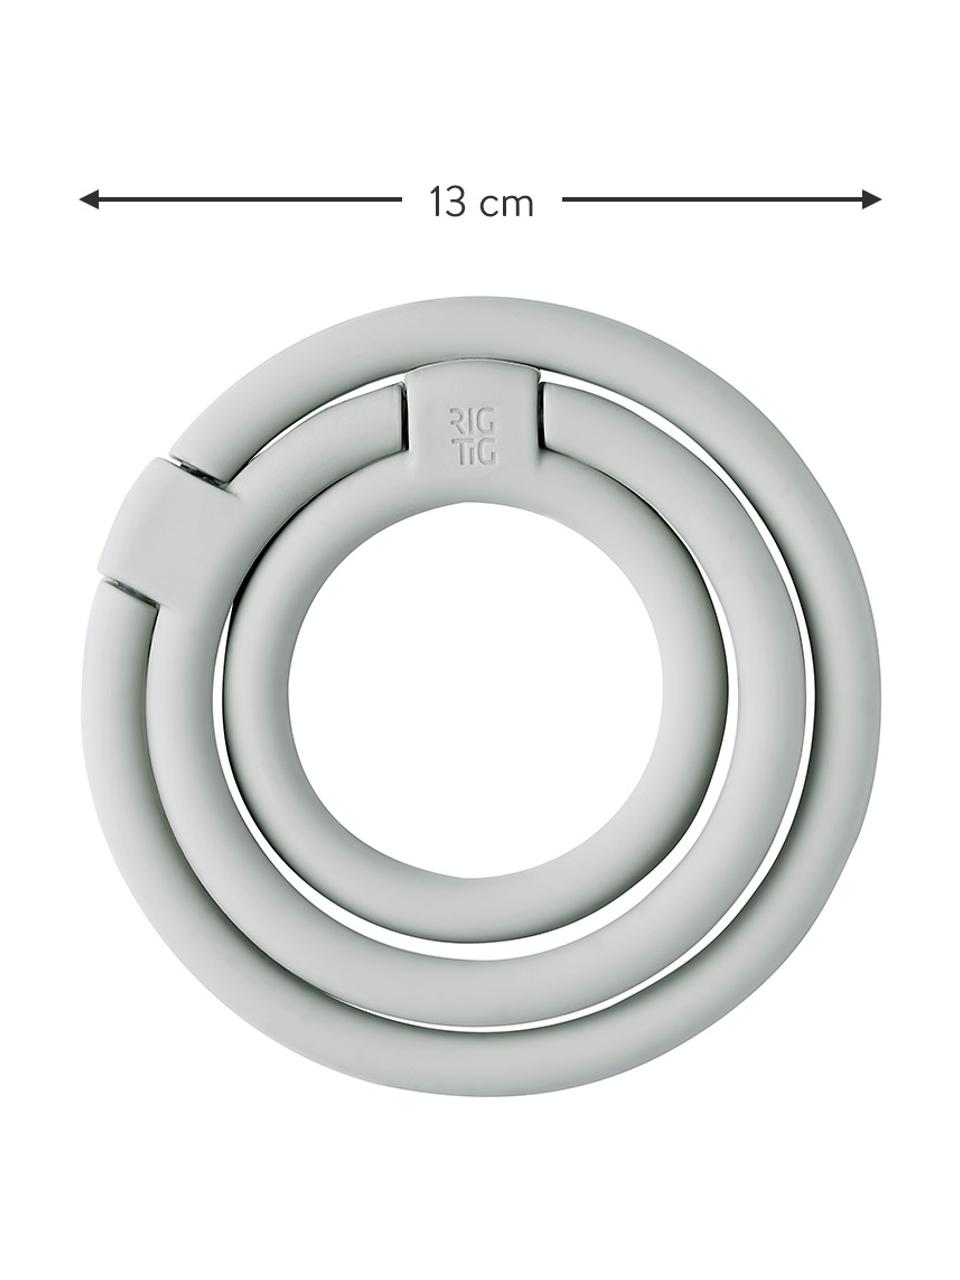 Sottopentola in silicone grigio chiaro Circles, Silicone, nylon, Grigio chiaro, Set in varie misure